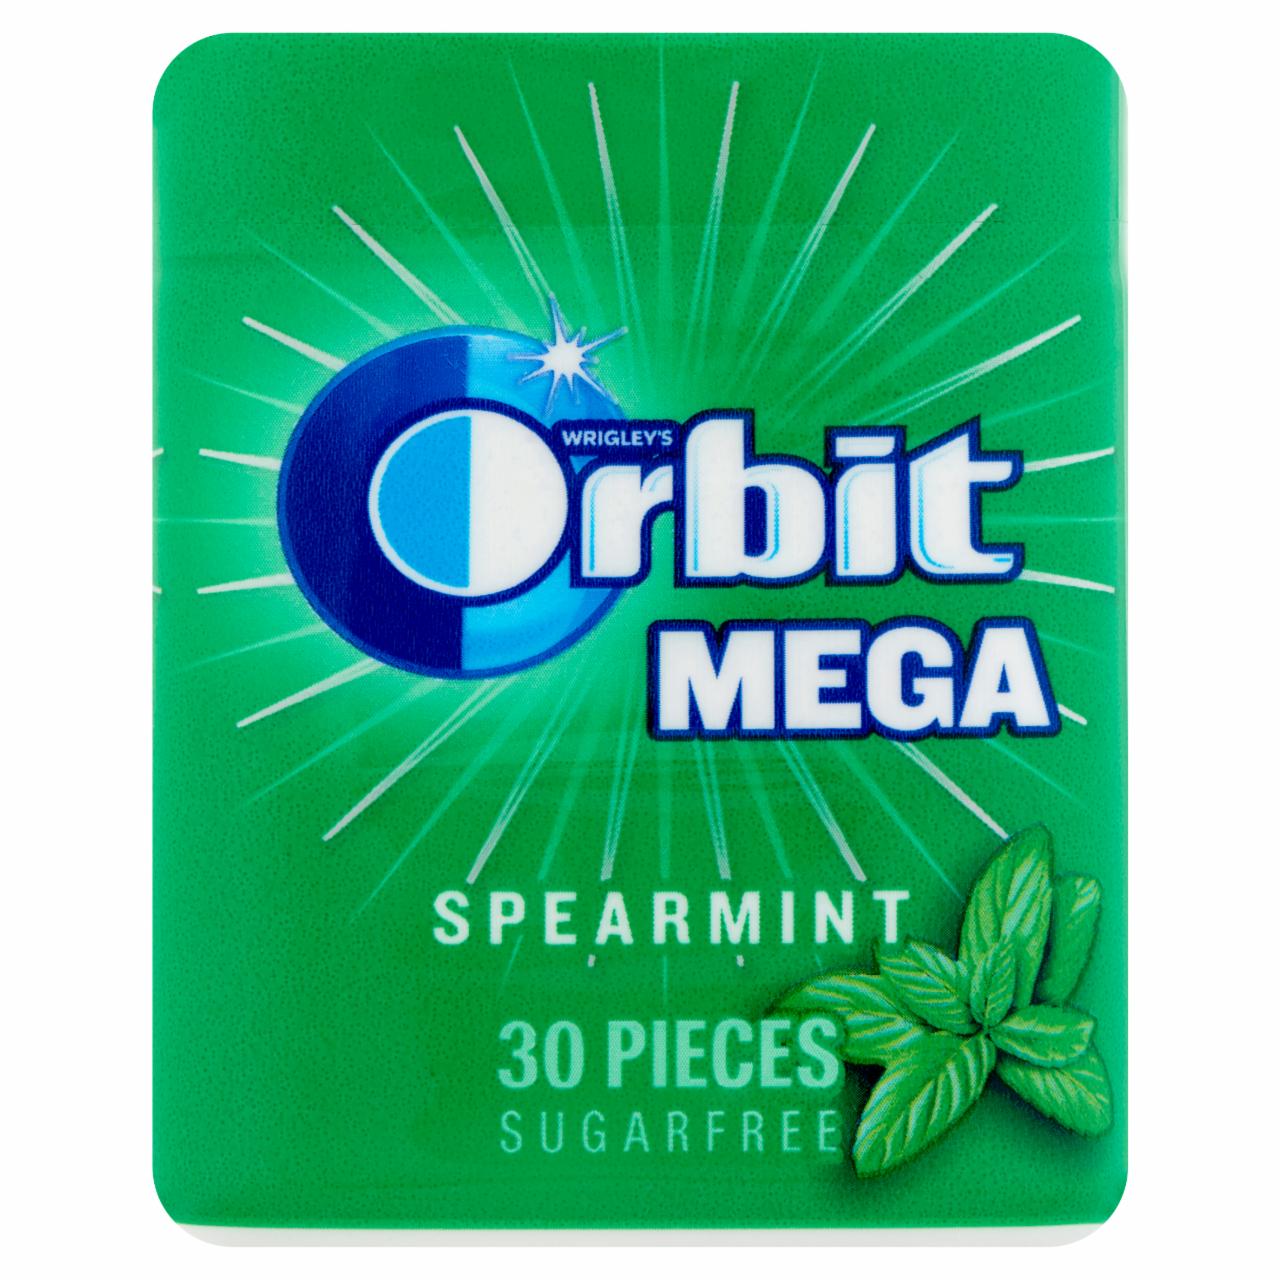 Képek - Orbit Mega Spearmint mentaízű rágógumi 66 g